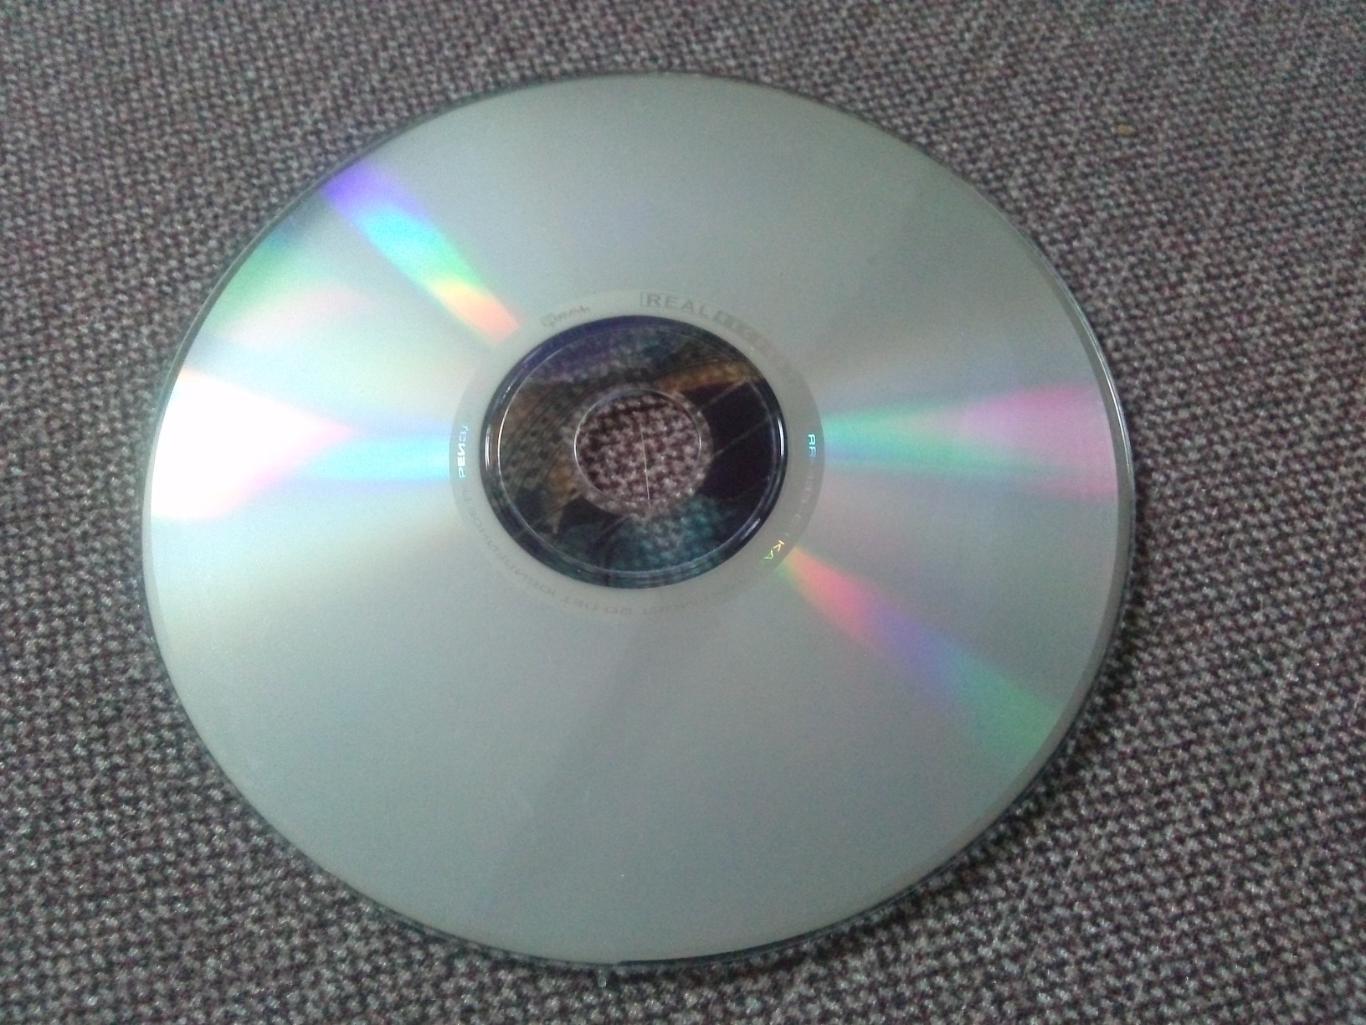 CD диск : группа Калинов мост - Руда 2006 г. (Дмитрий Ревякин) Русский рок 5